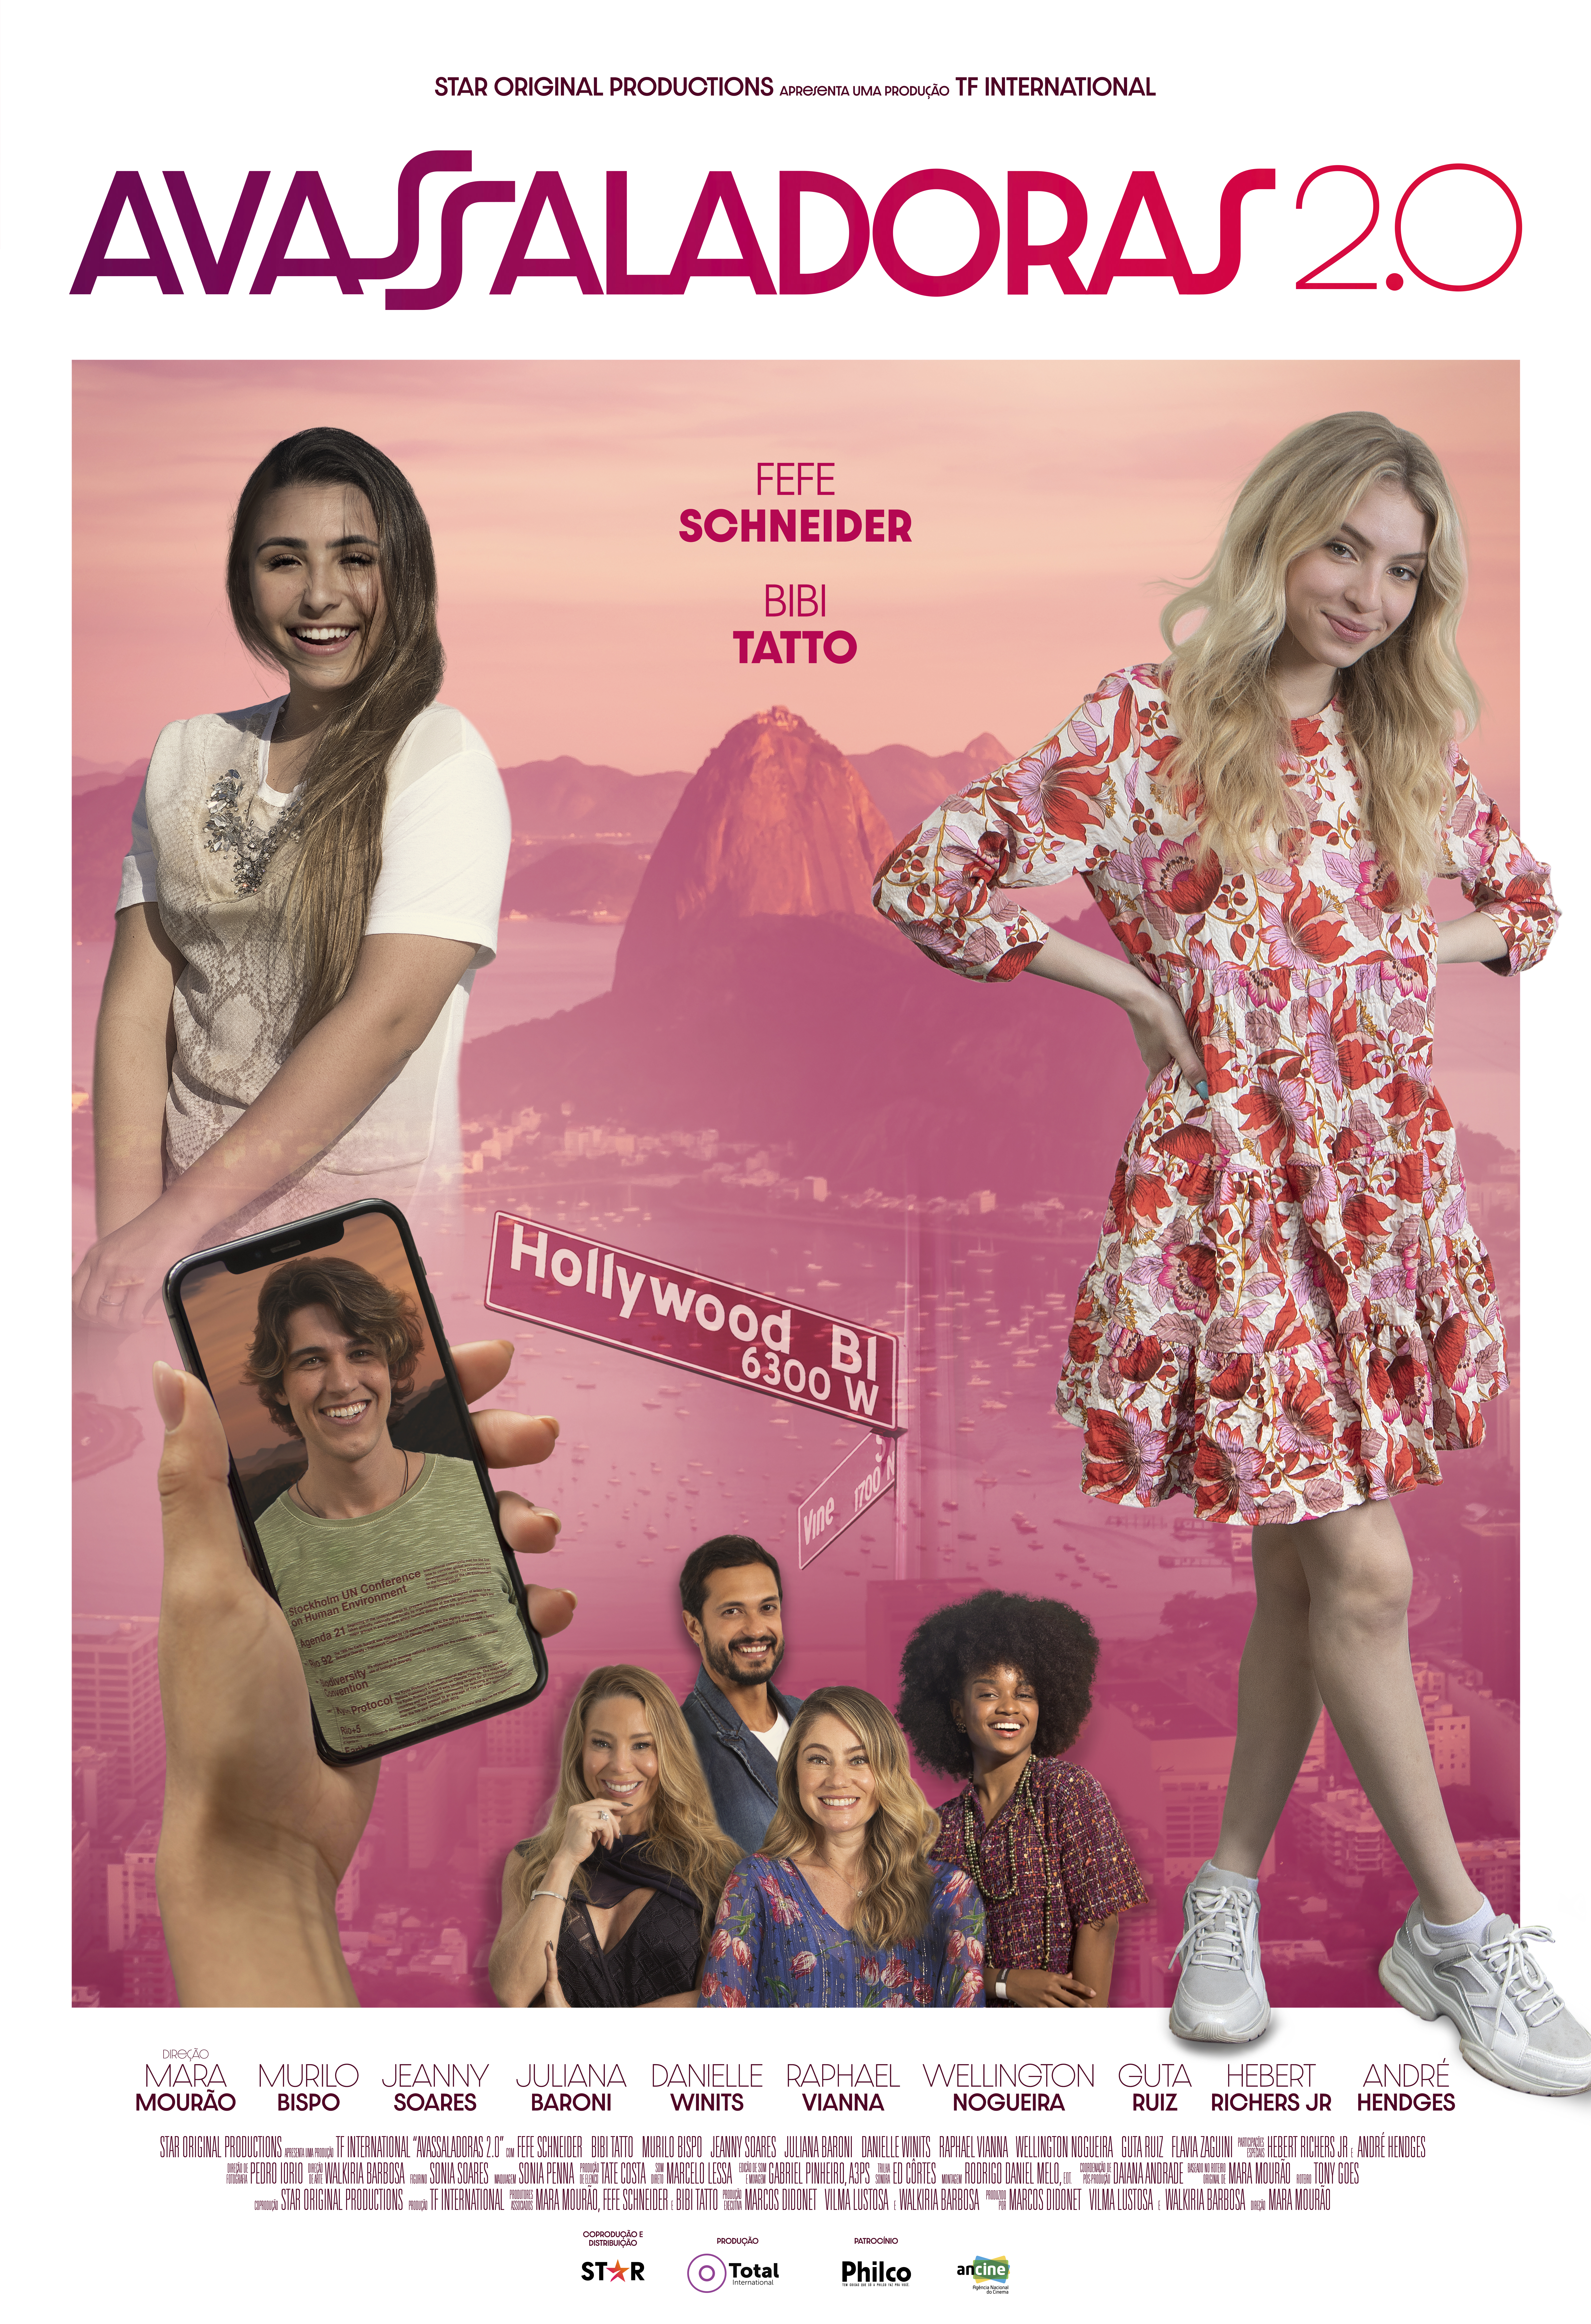 Recorte do pôster de Avassaladoras 2.0 com protagonistas posando para foto e sorrindo; o Rio de Janeiro aparece como cenário com um filtro rosa ao fundo